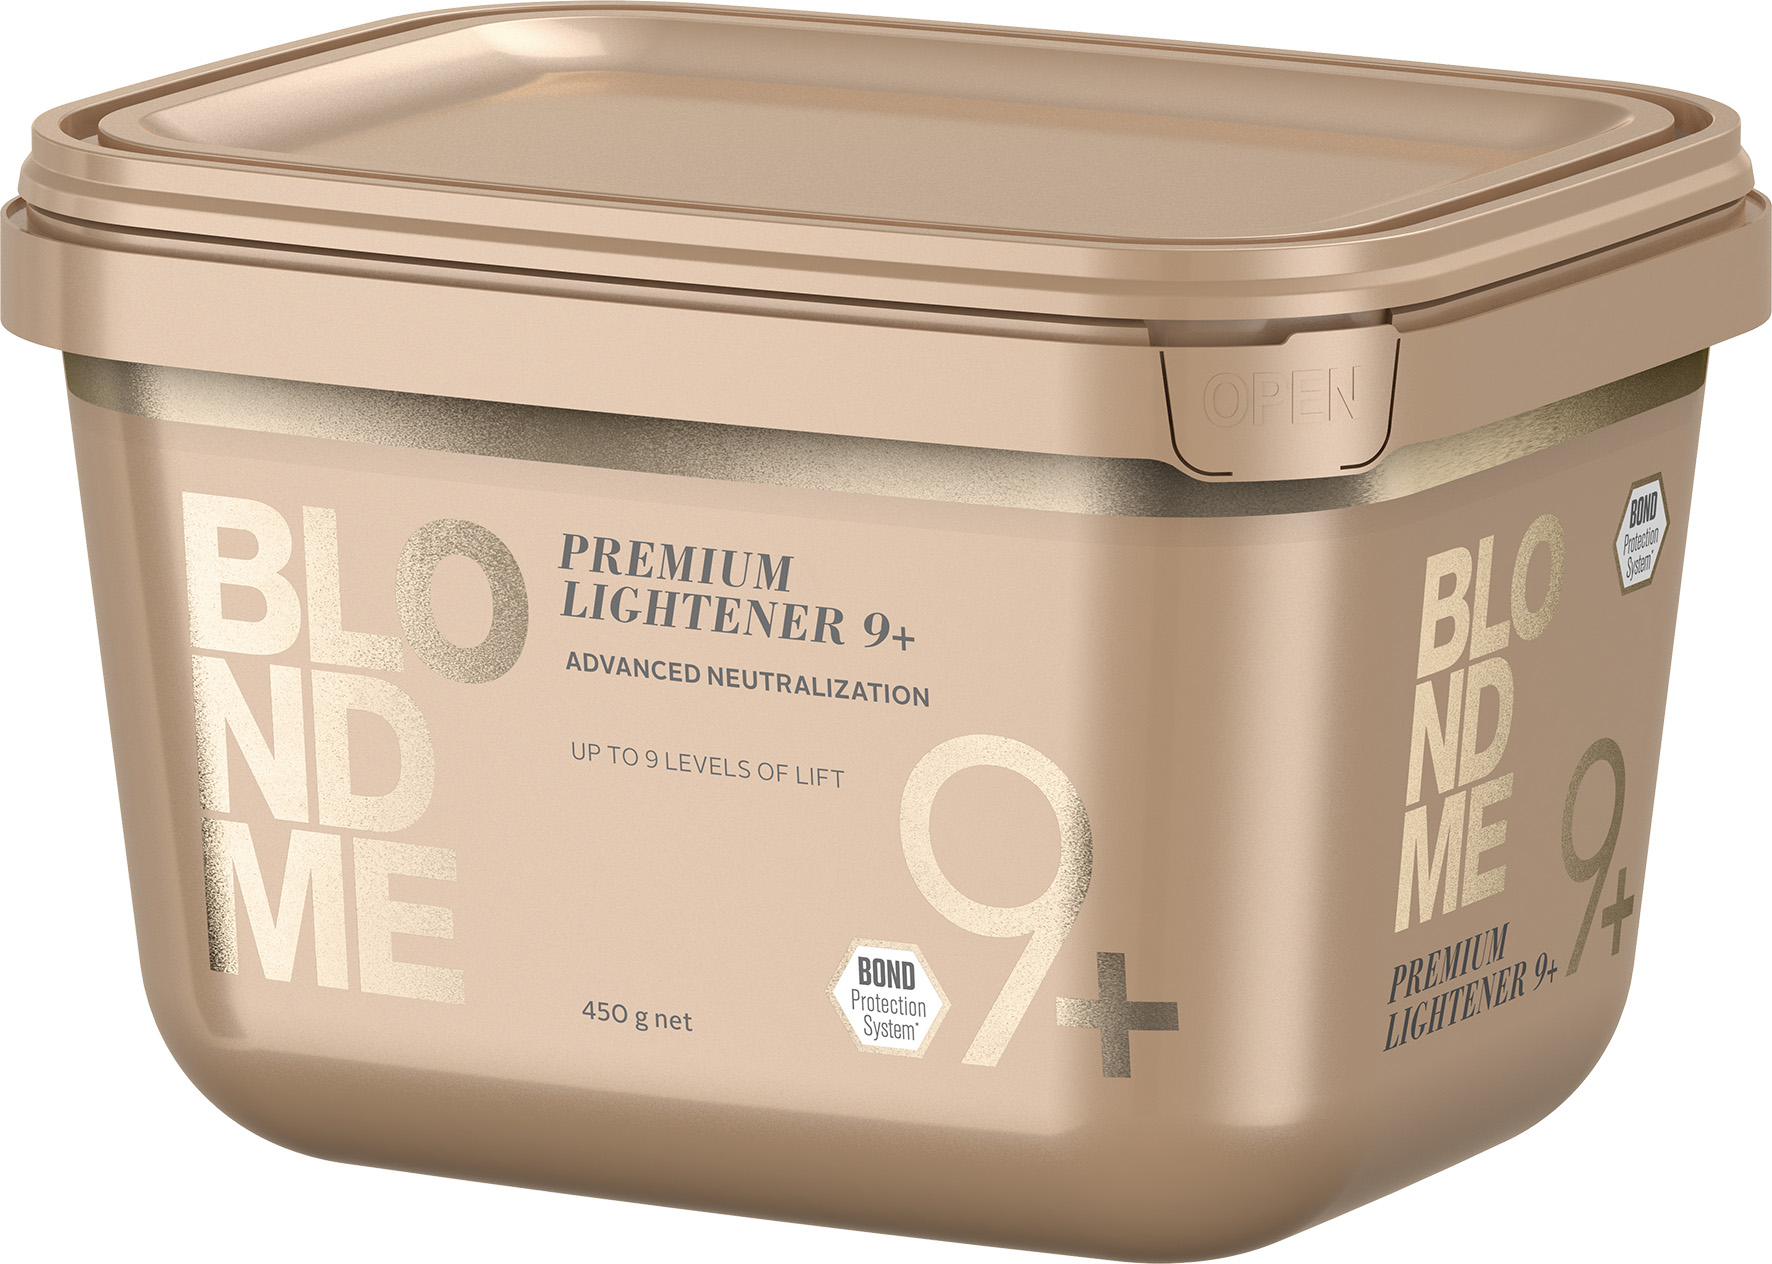 Schwarzkopf Blondme Premium Aufheller 9+ 450g